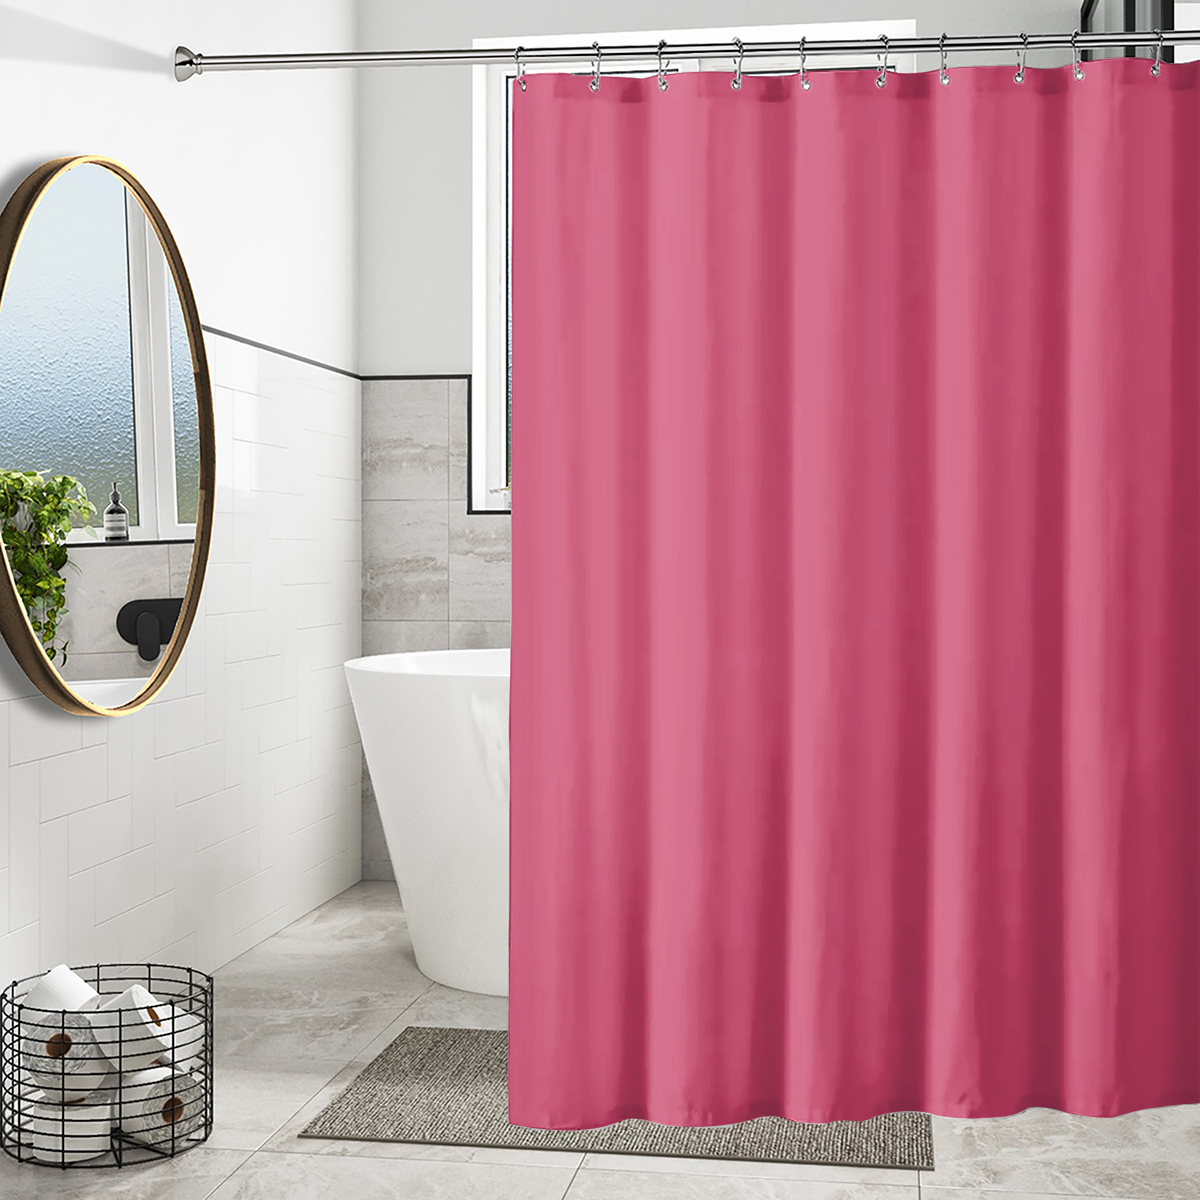 Mildew Resistant Waterproof Vinyl Magnet Grommet Shower Curtain Liner For Bathroom - Peach